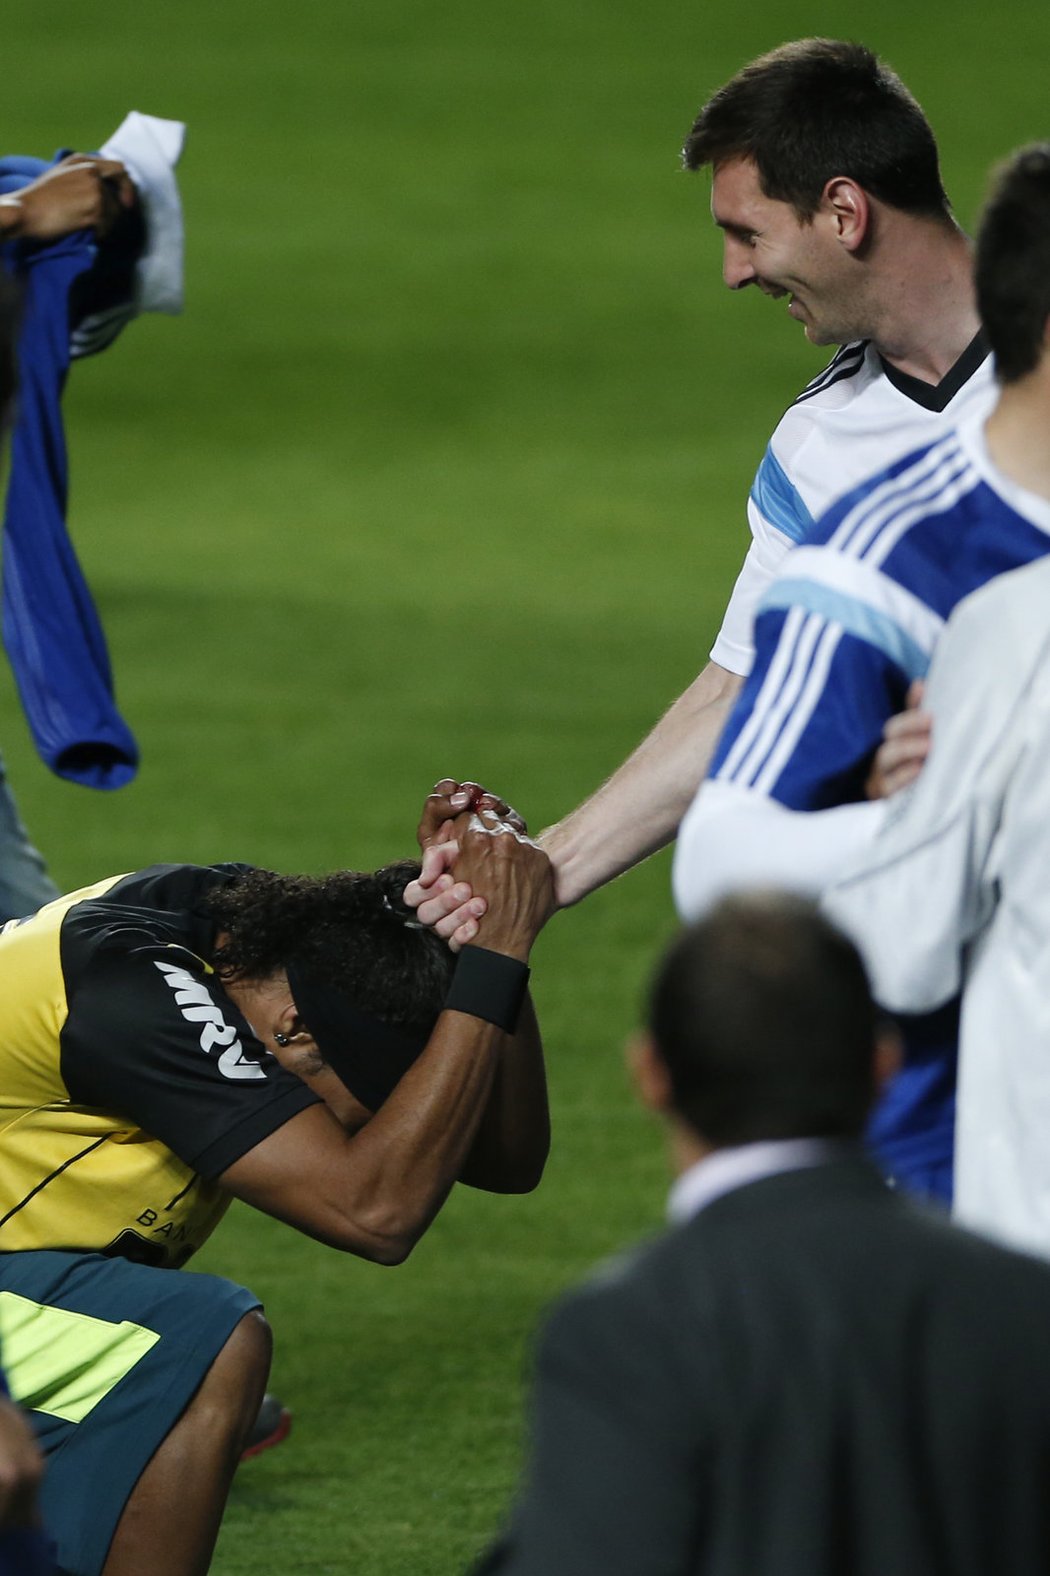 Ronaldinhův dvojník se klaní Messimu na argentinském tréninku. Po jeho skončení na hřiště vtrhlo několik fanoušků, kteří se snažili dostat právě k hvězdě Barcelony